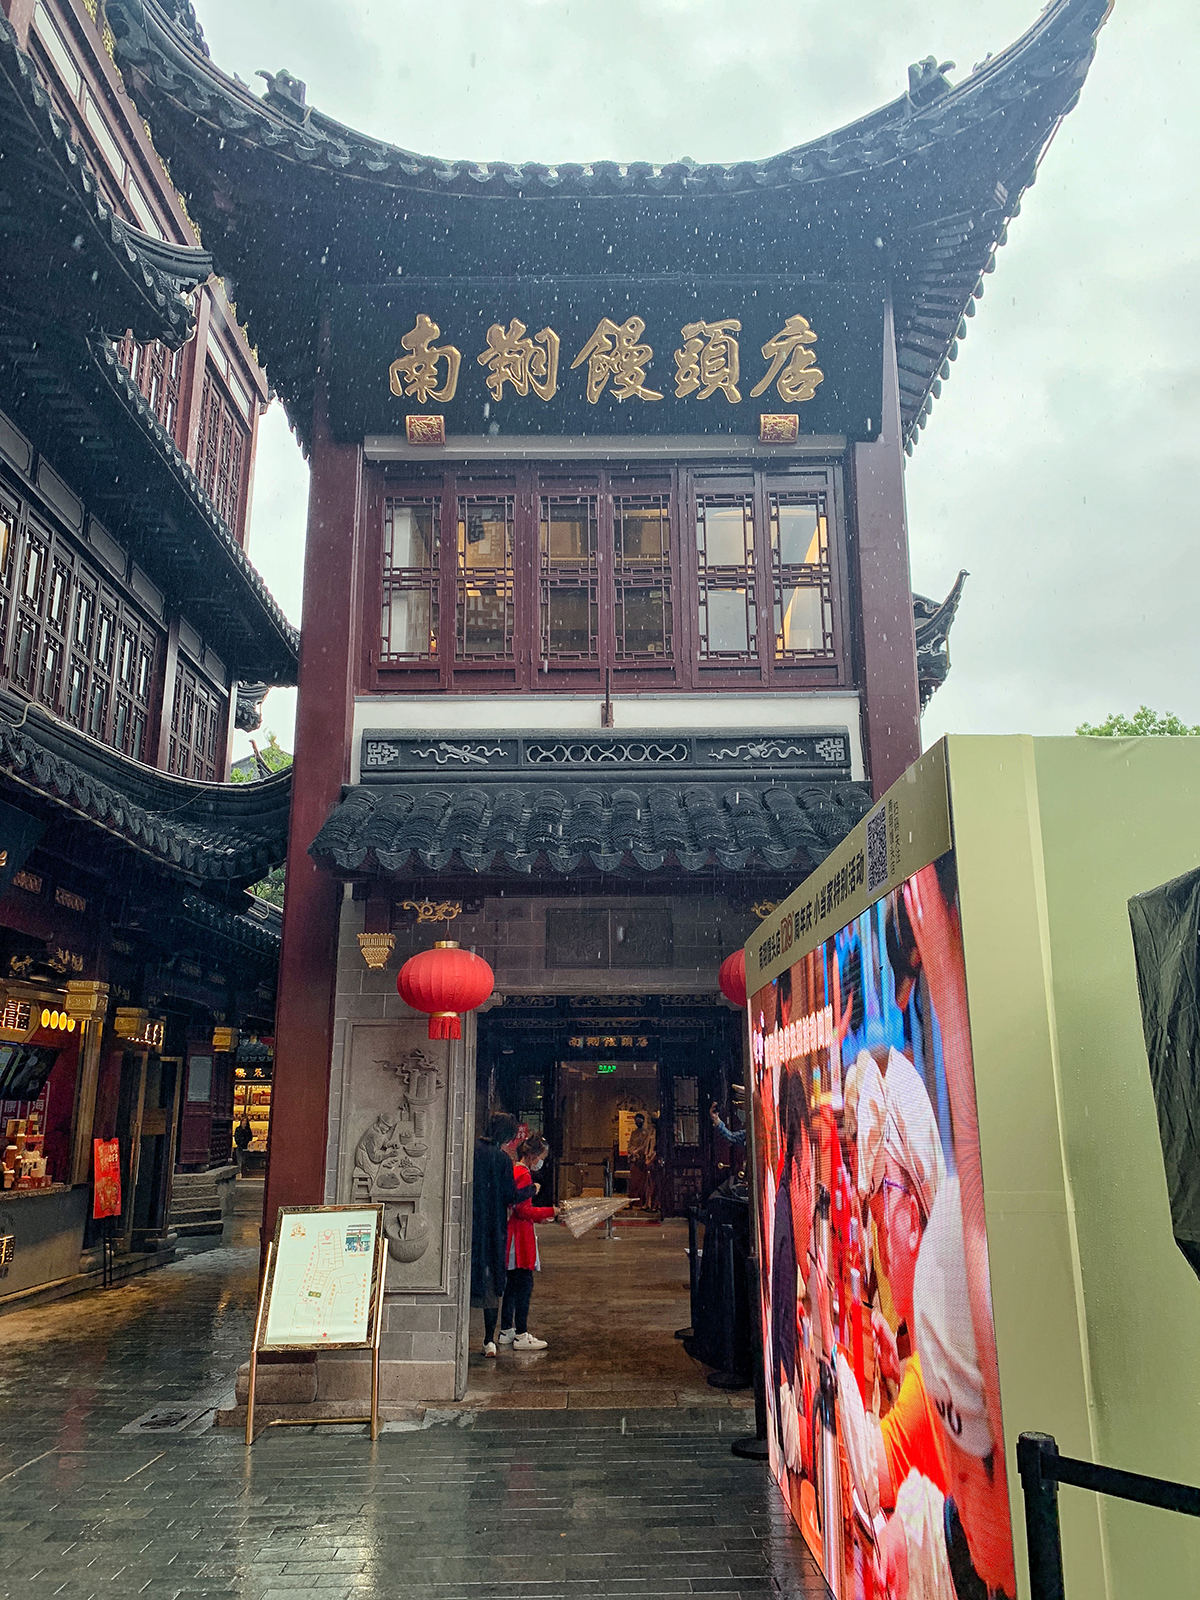 上海城隍庙南翔馒头店图片